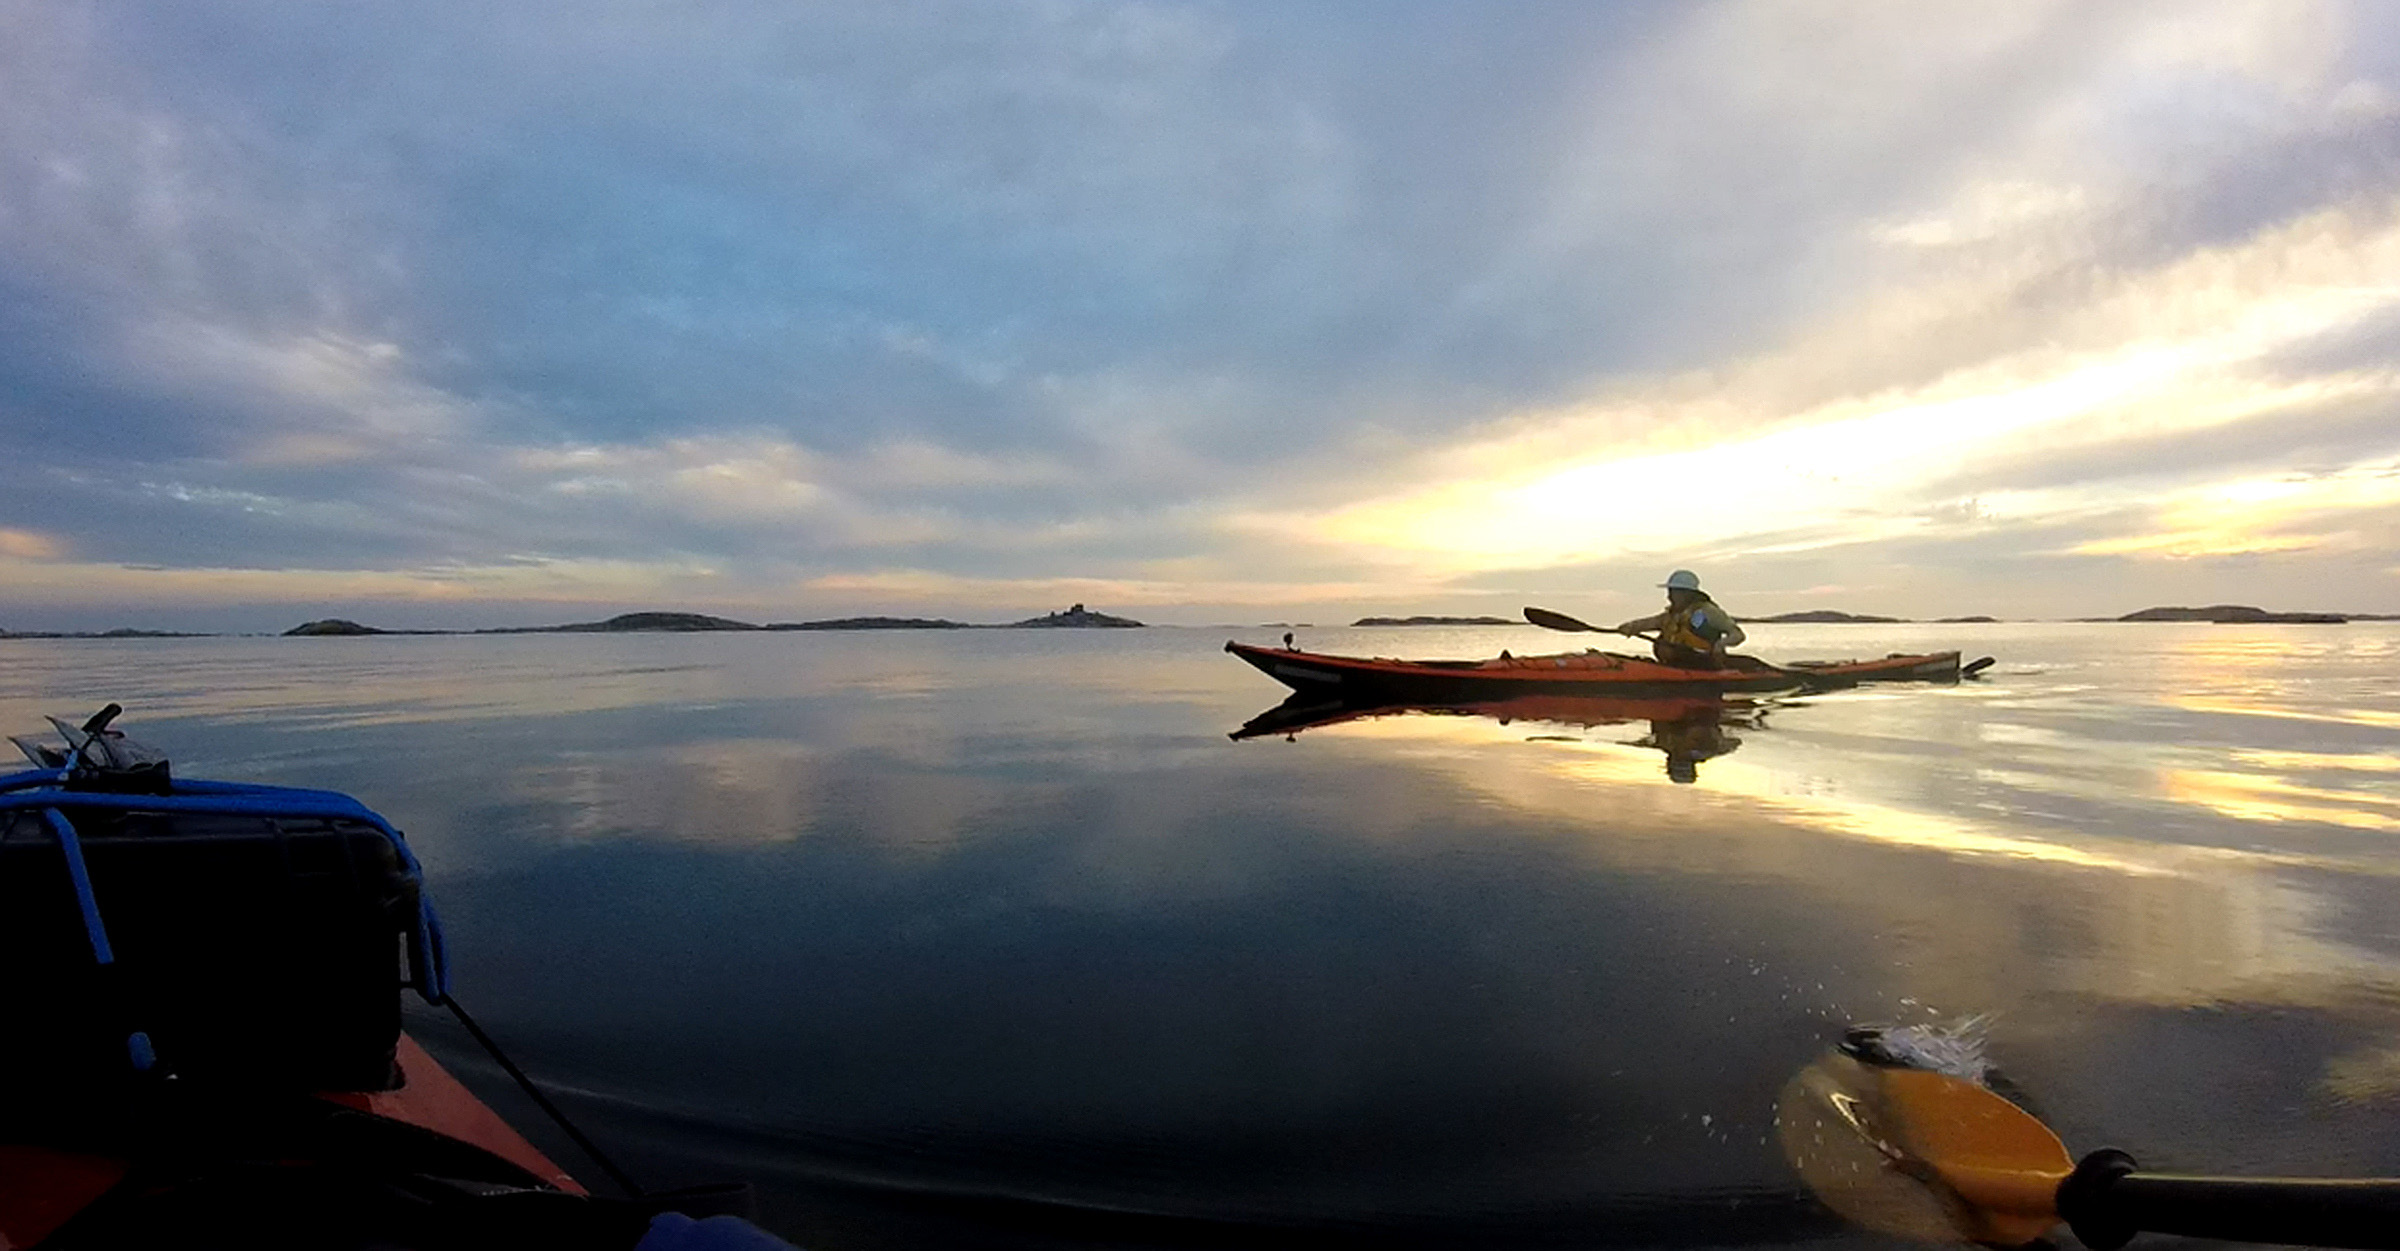 Eine Person fährt mit dem Kajak in einen Sonnenuntergang auf dem Meer.